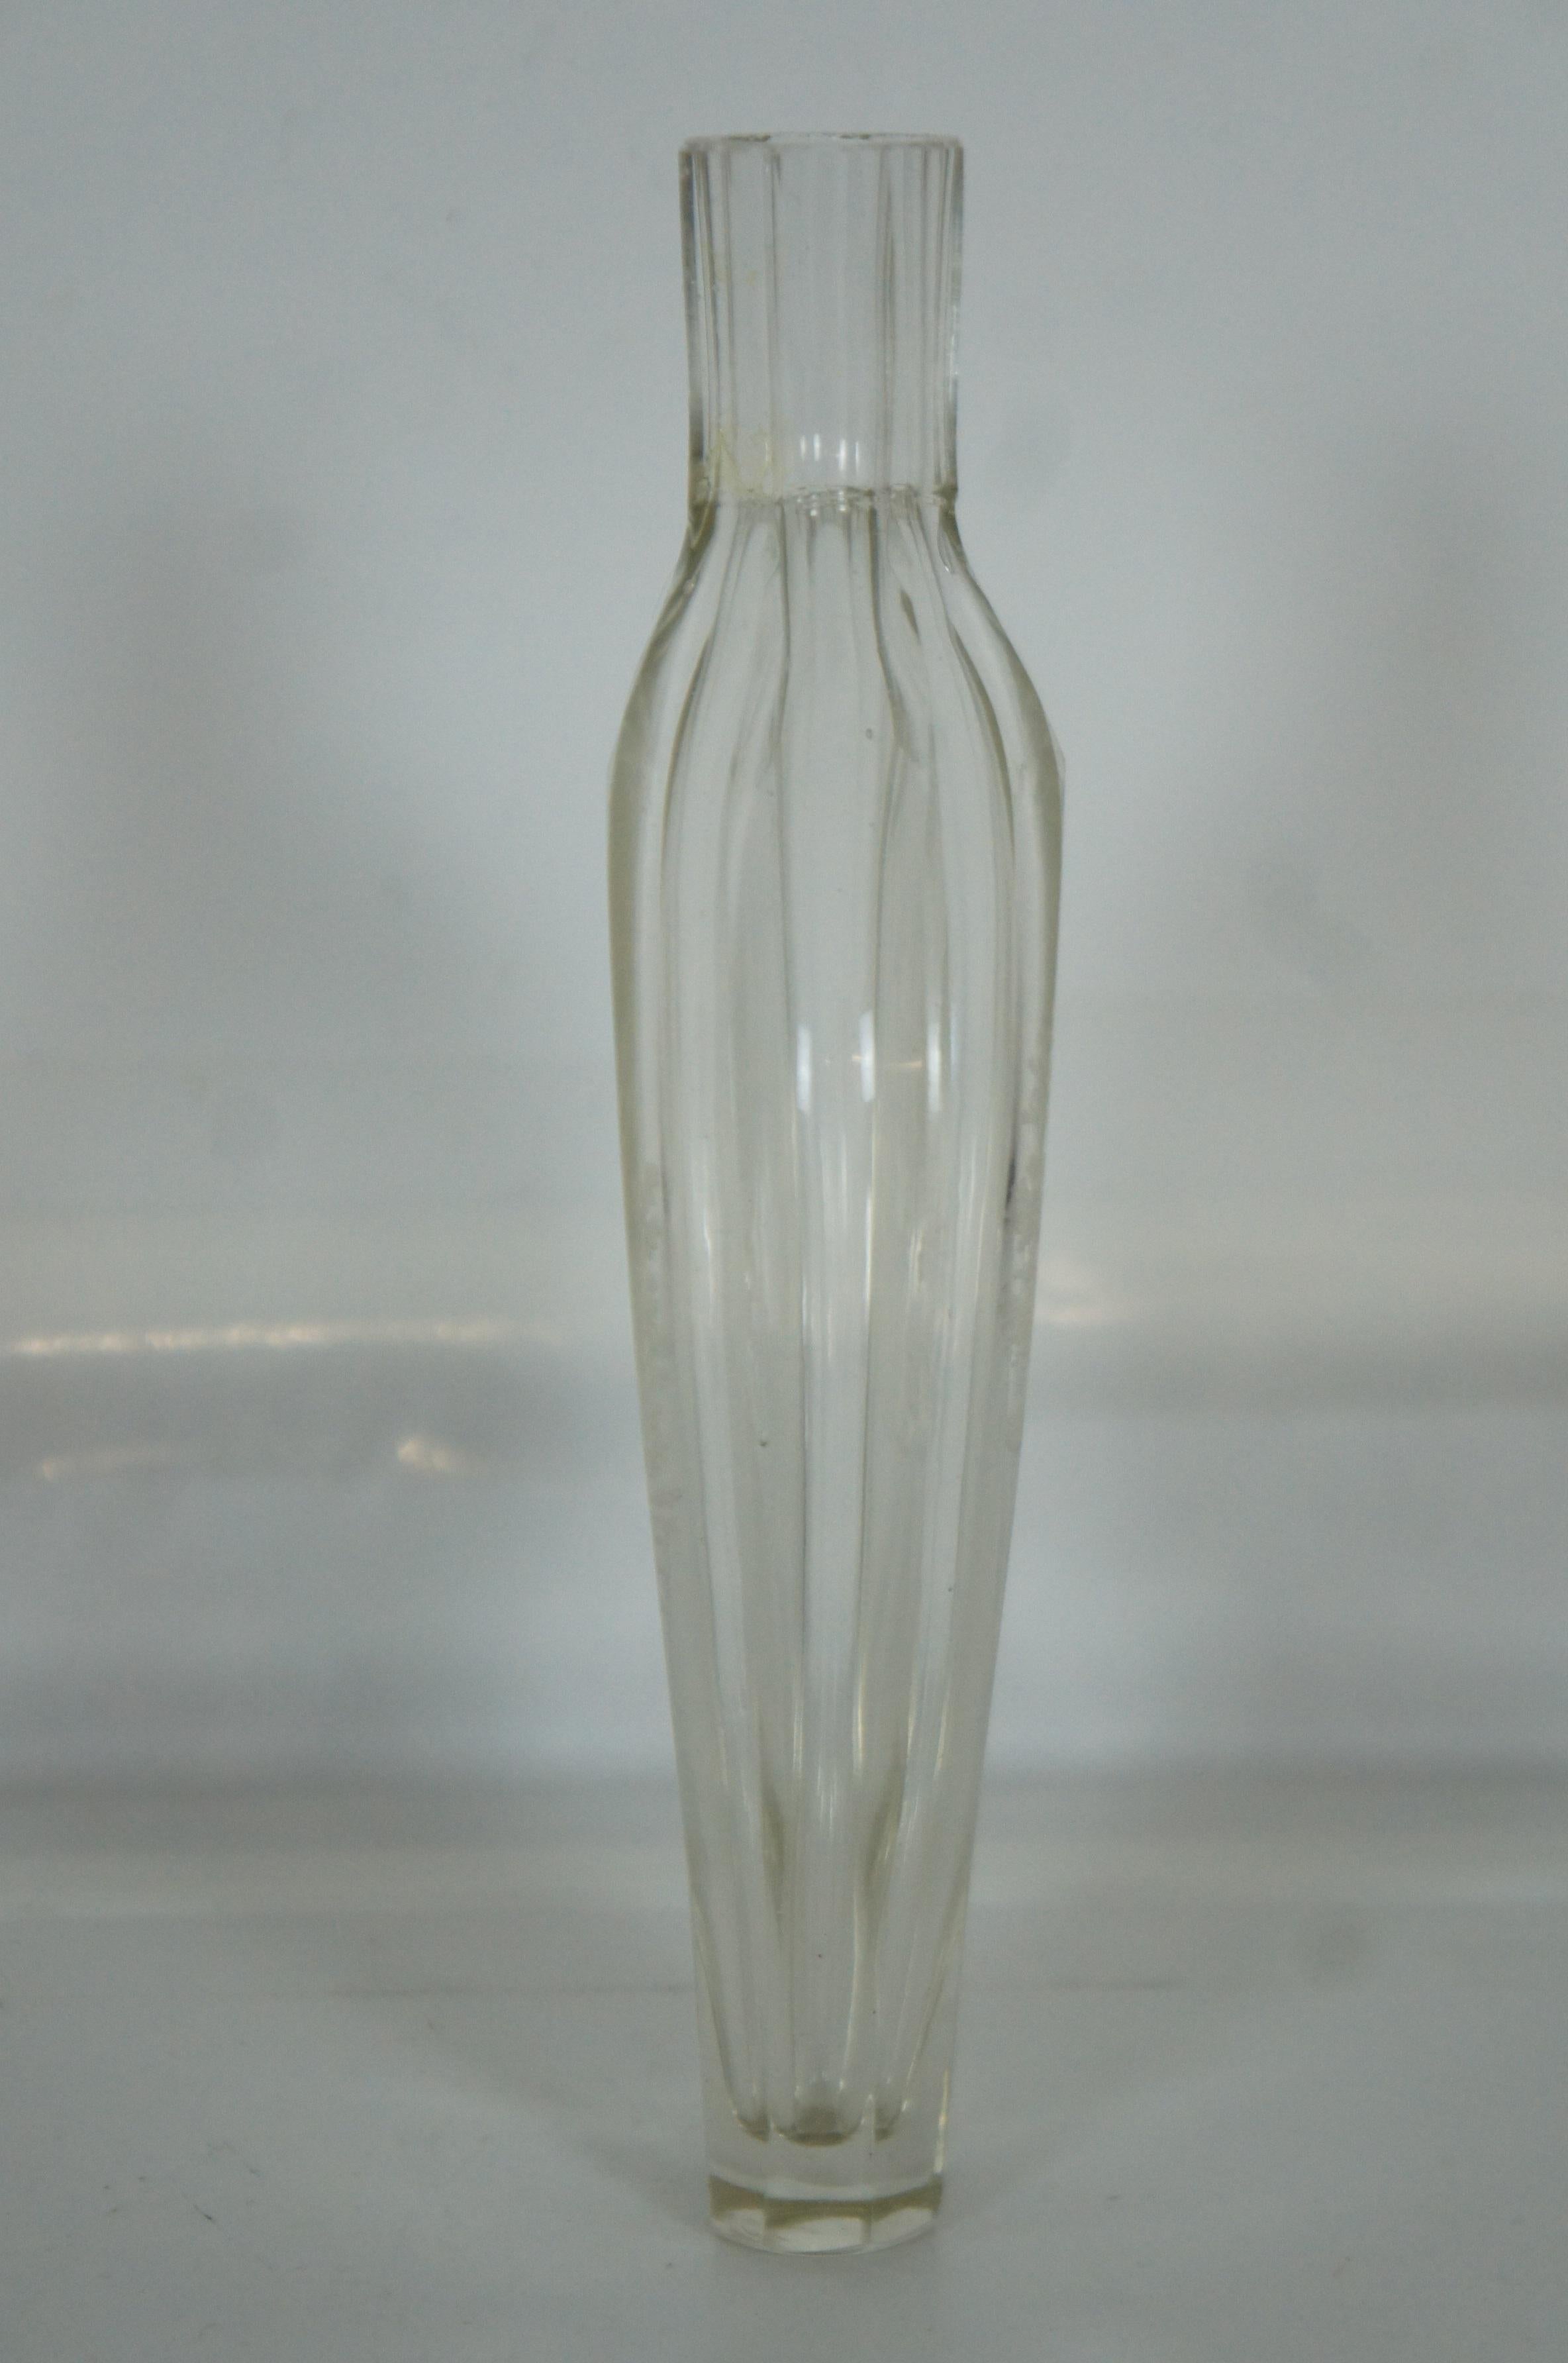 1872 Antique German Etched Glass Perfume Bottle Decanter Bud Vase Stag Deer 1